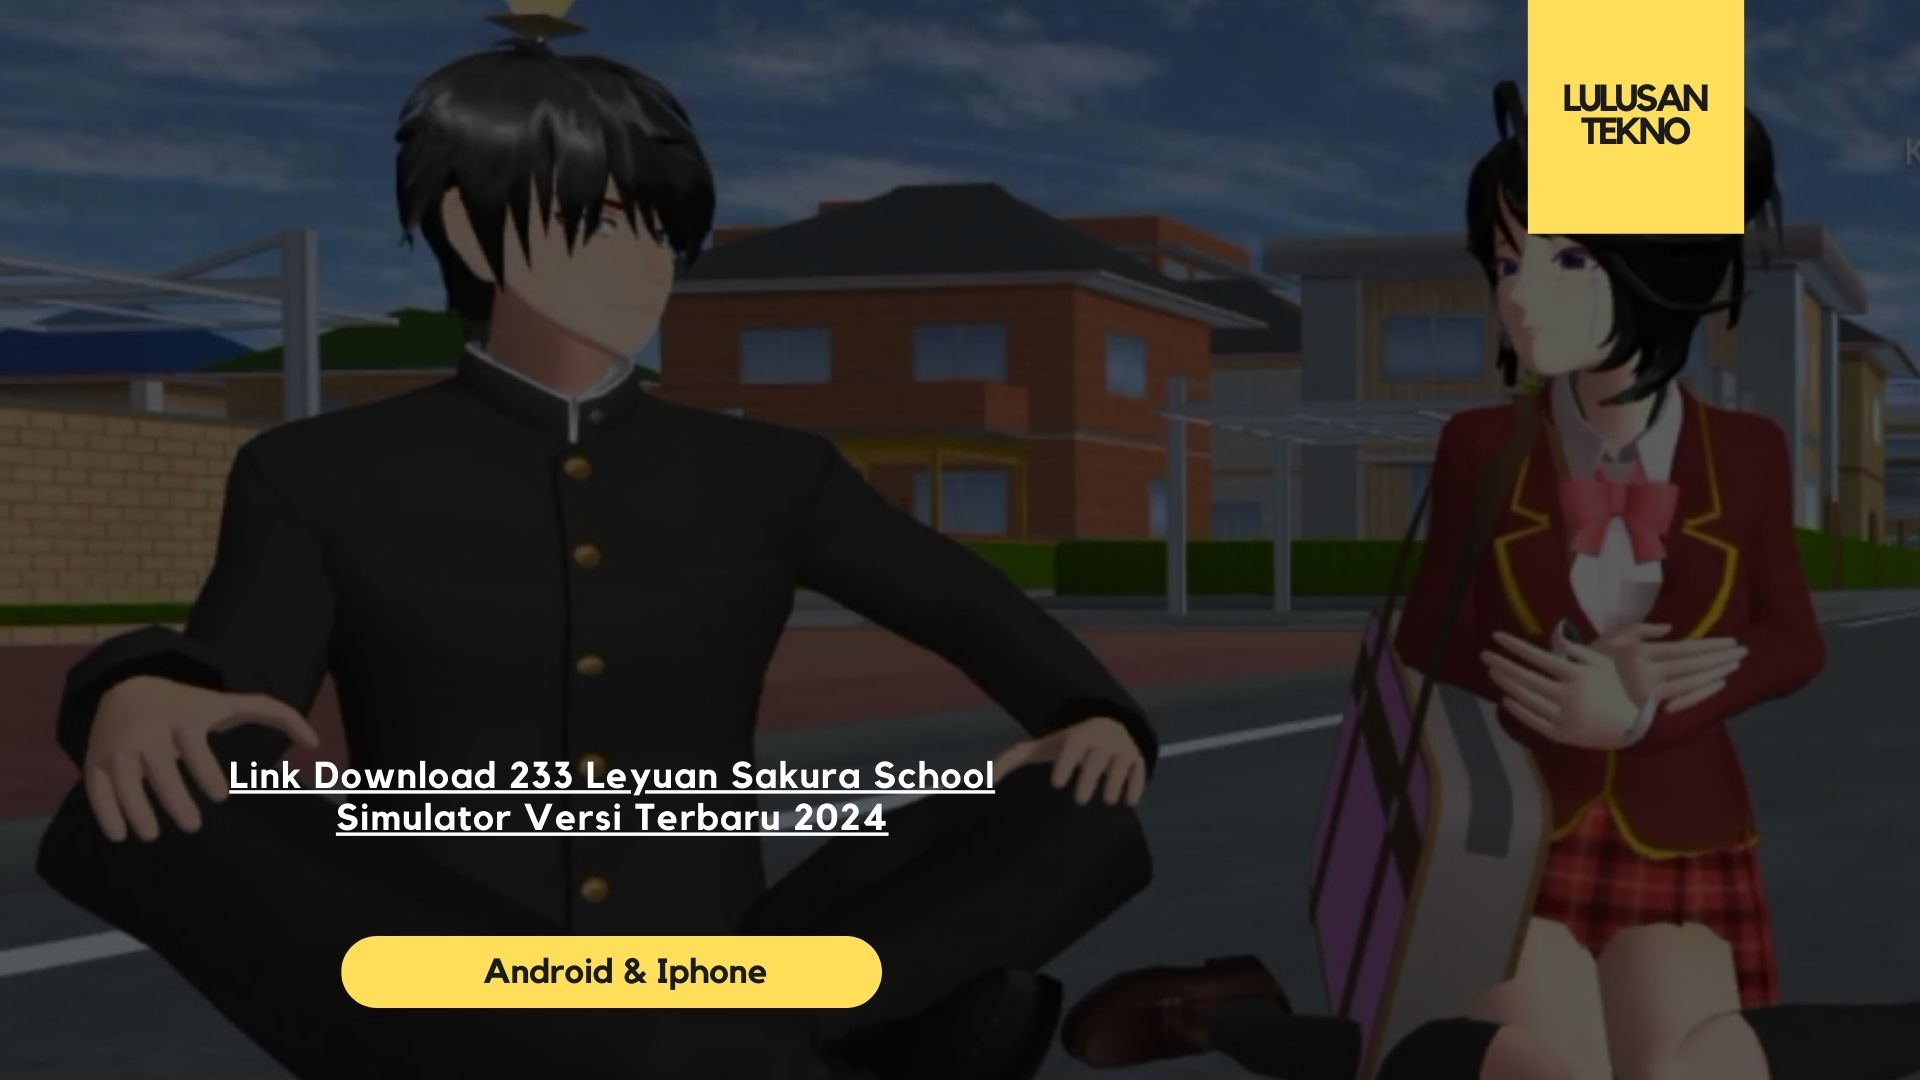 Link Download 233 Leyuan Sakura School Simulator Versi Terbaru 2024